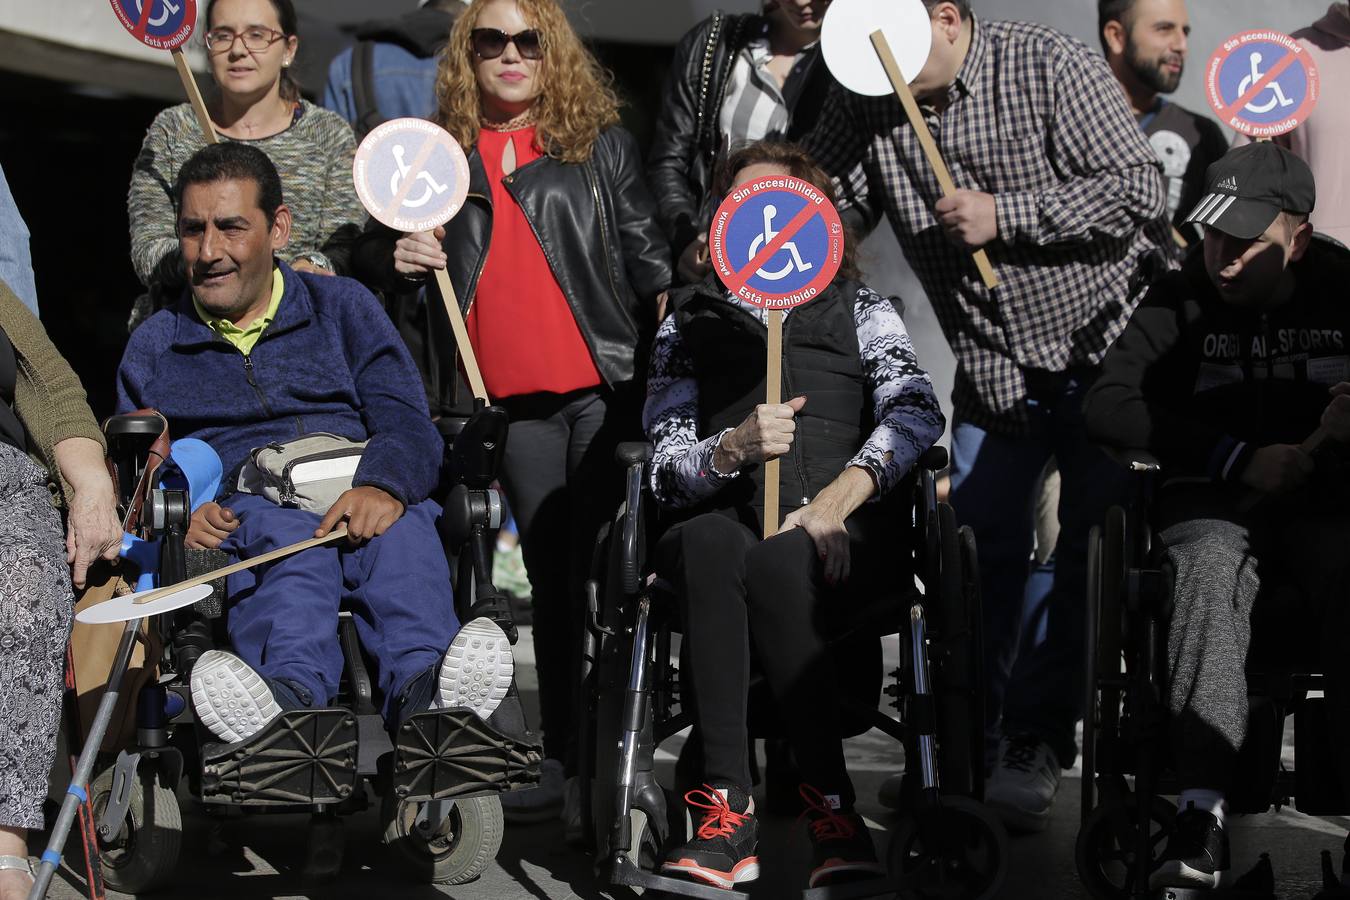 Protesta por una Sevilla accesible a todos